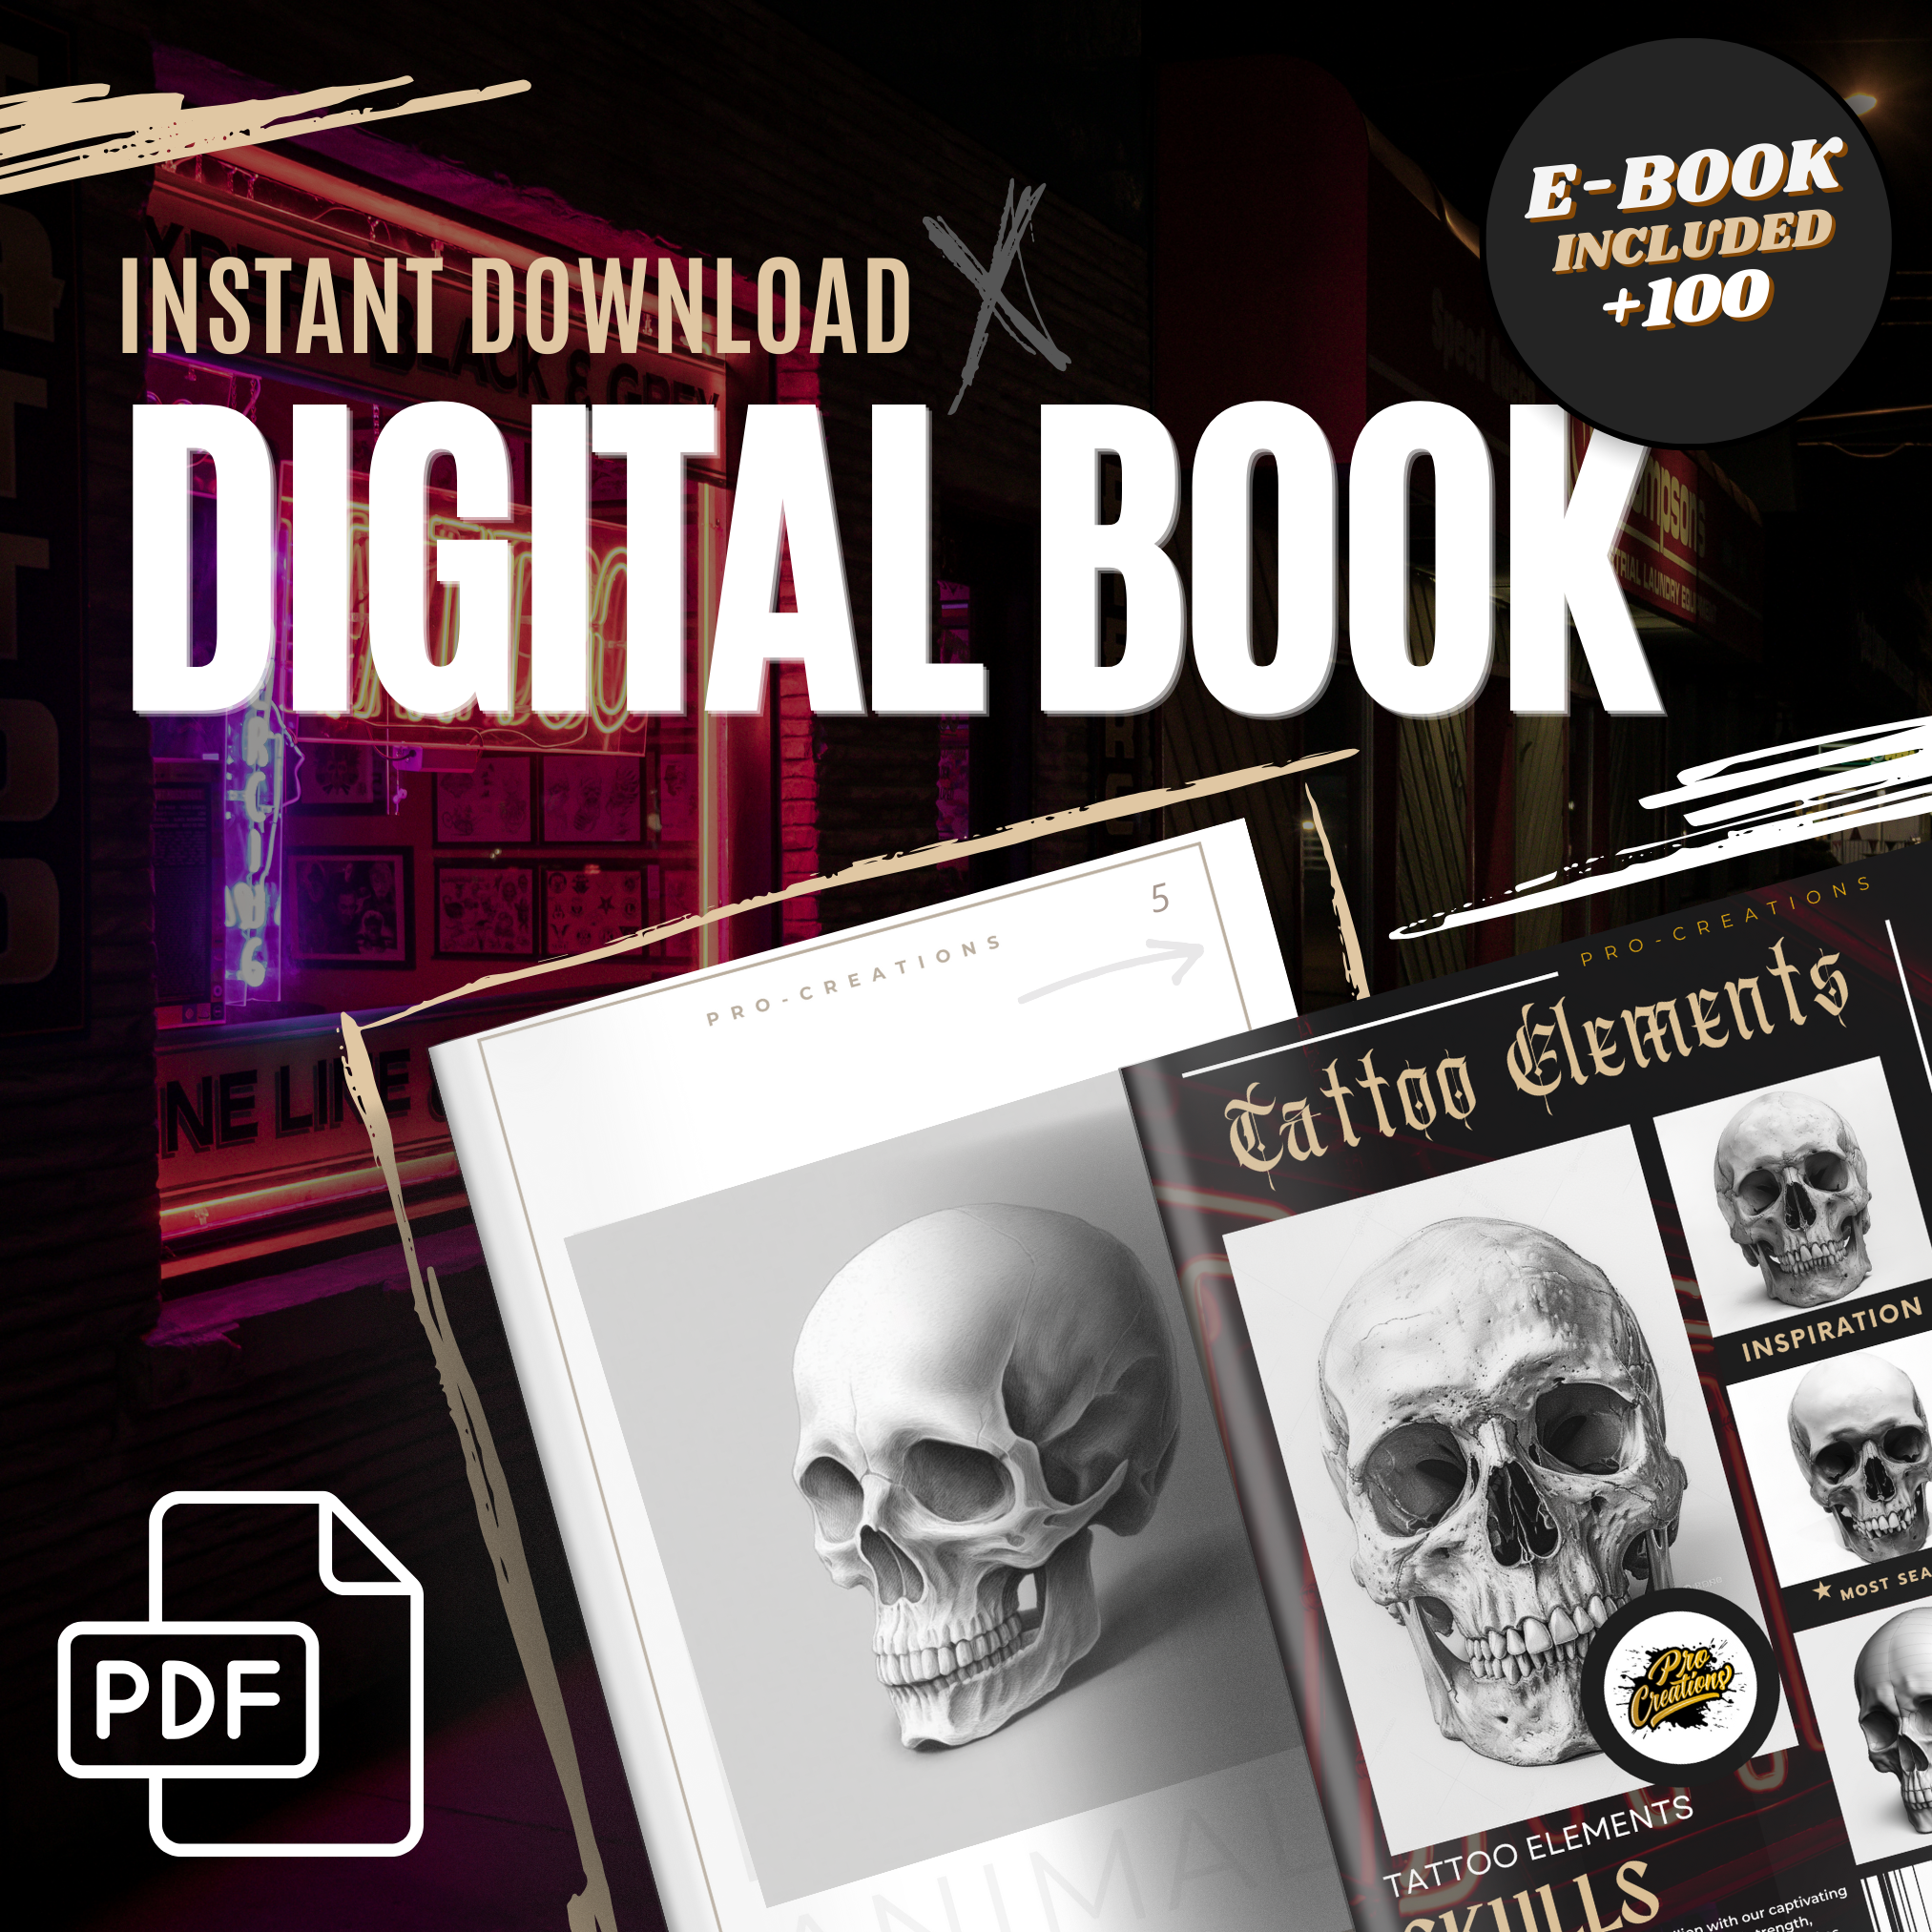 Digitale Tattoo-Element-Designsammlung mit Totenköpfen: 100 Procreate- und Skizzenbuchbilder